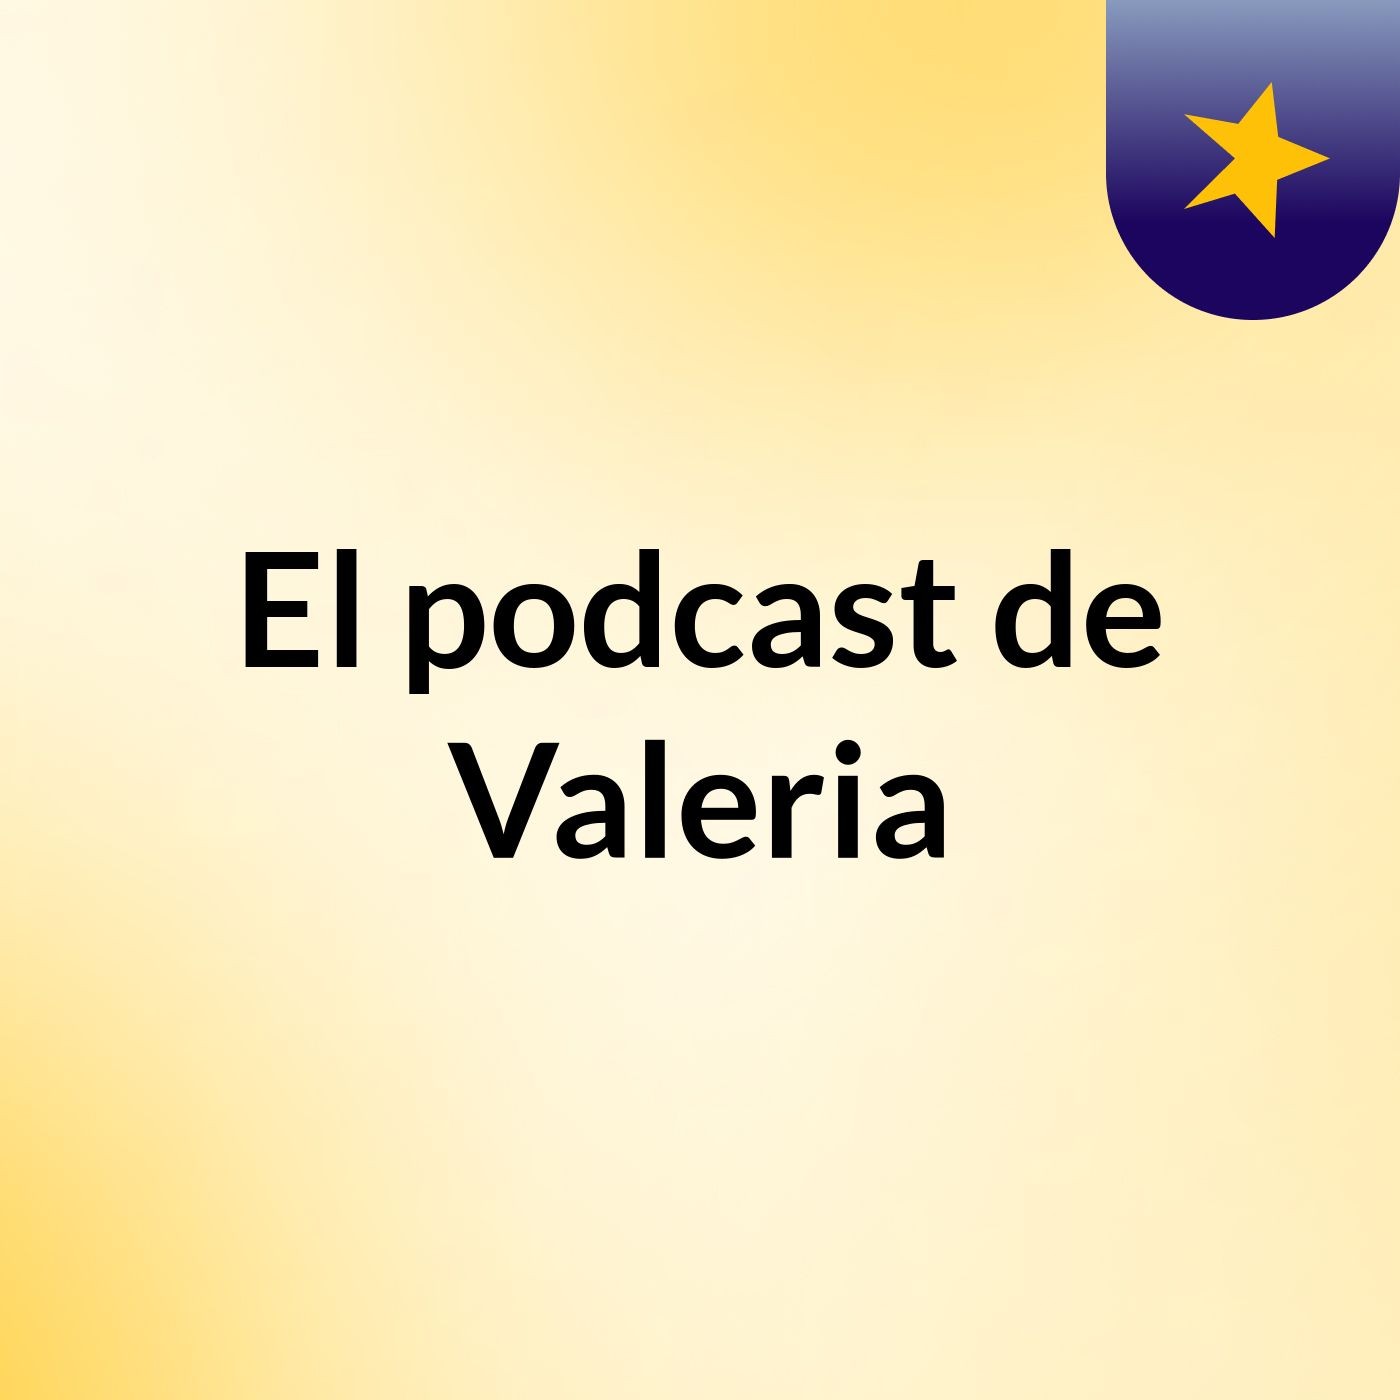 El podcast de Valeria